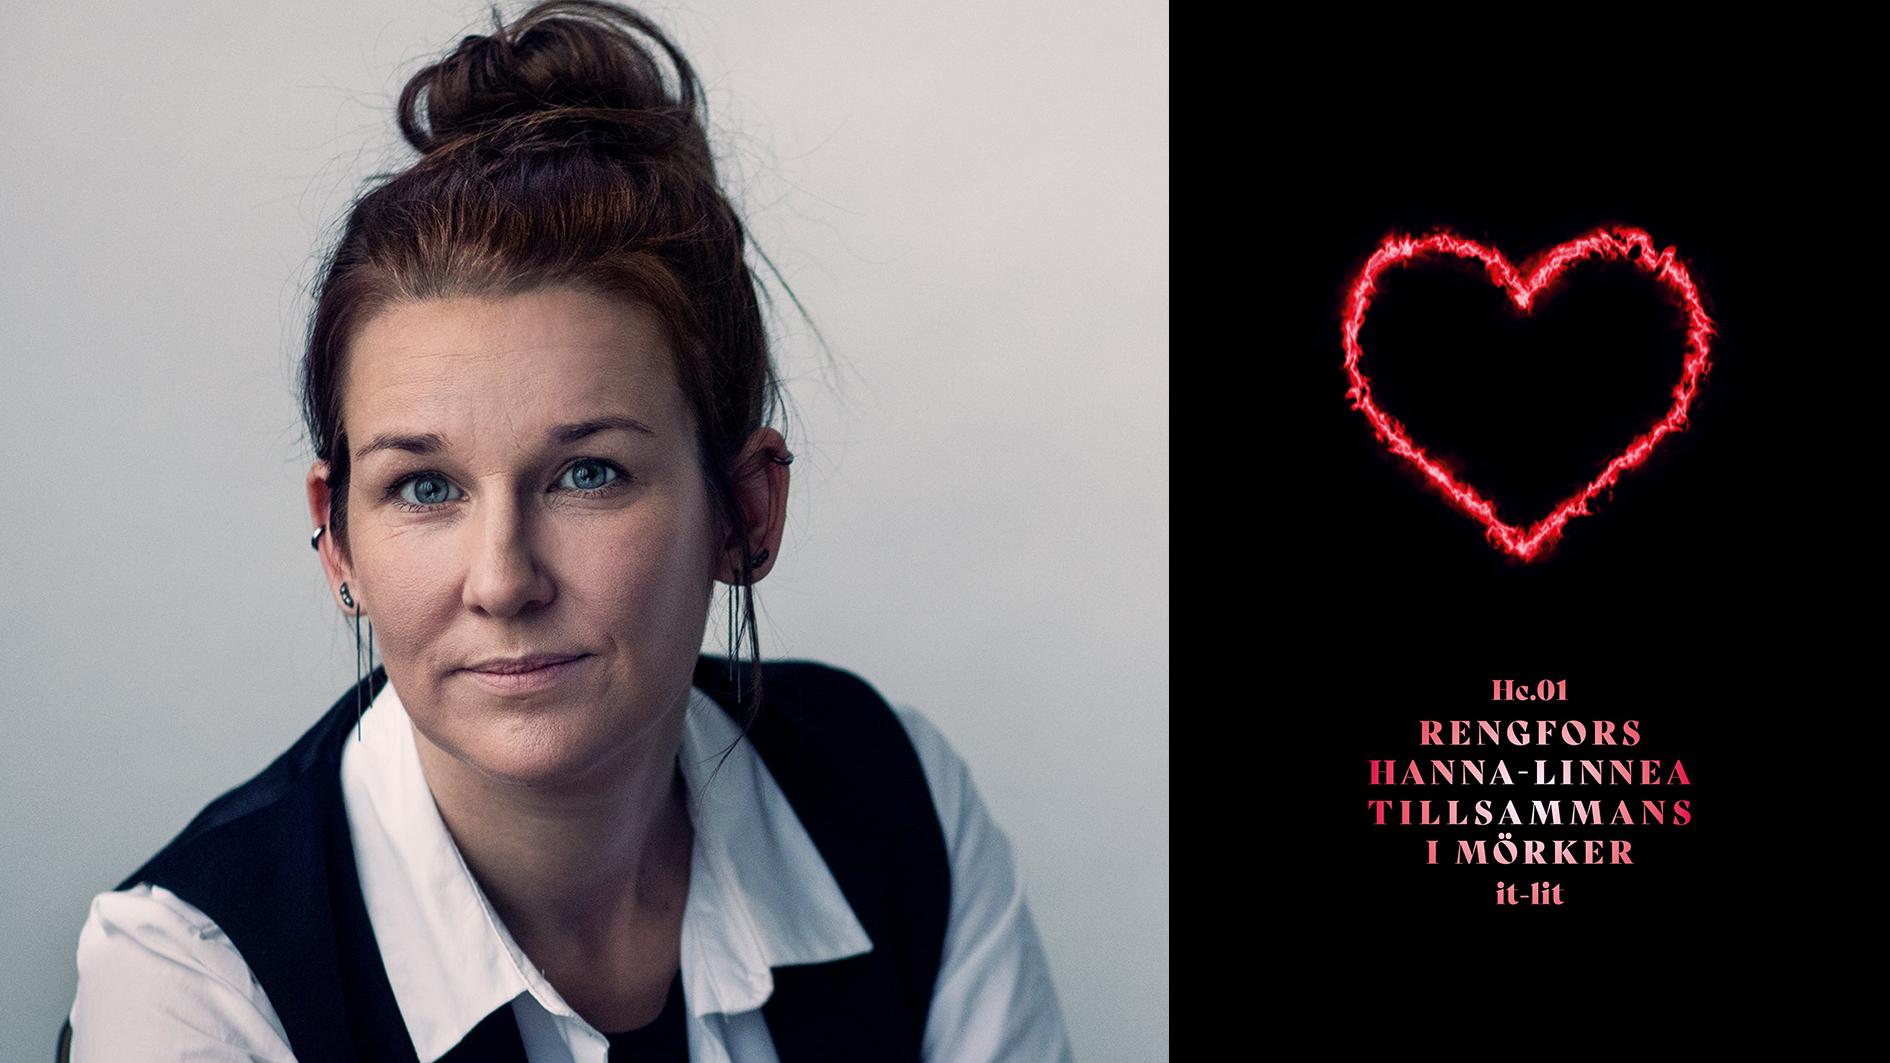 Hanna-Linnea Rengfors (född 1981) debuterade 2020 med diktsamlingen ”Närhetsprincipen”. ”Tillsammans i mörker” är hennes andra roman.